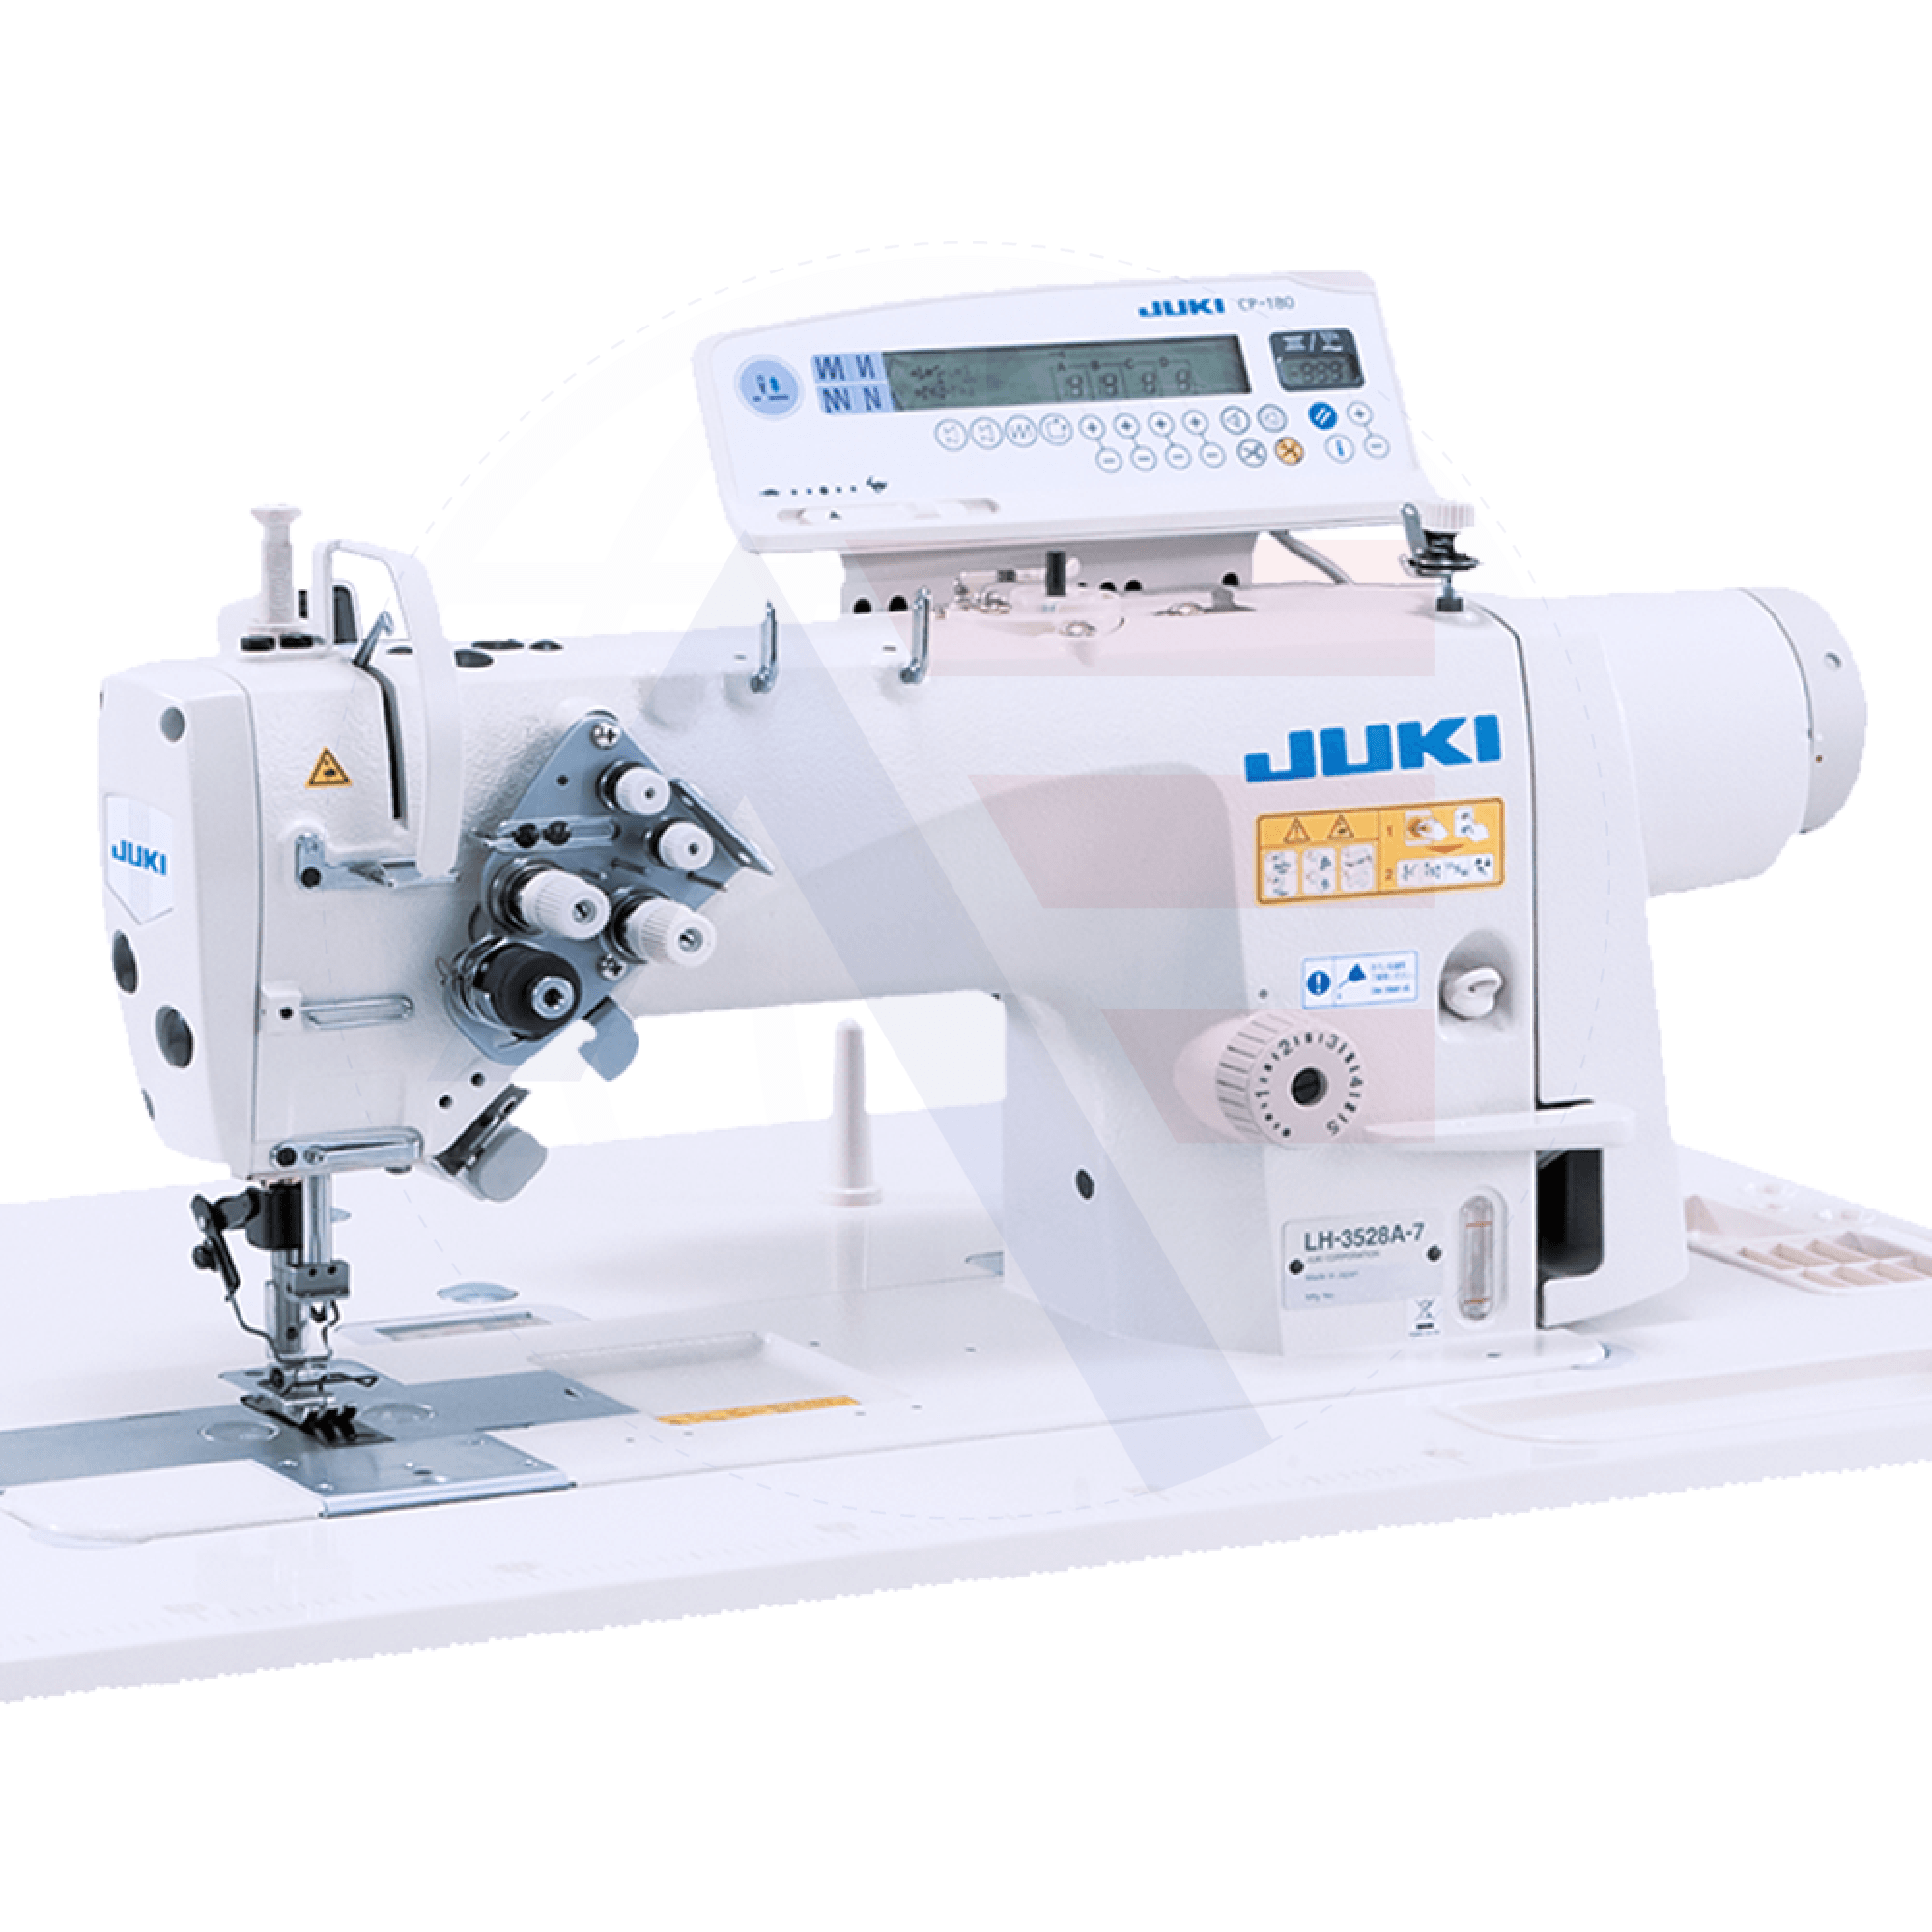 Juki Lh-3578A 2-Needle Lockstitch Machine Sewing Machines